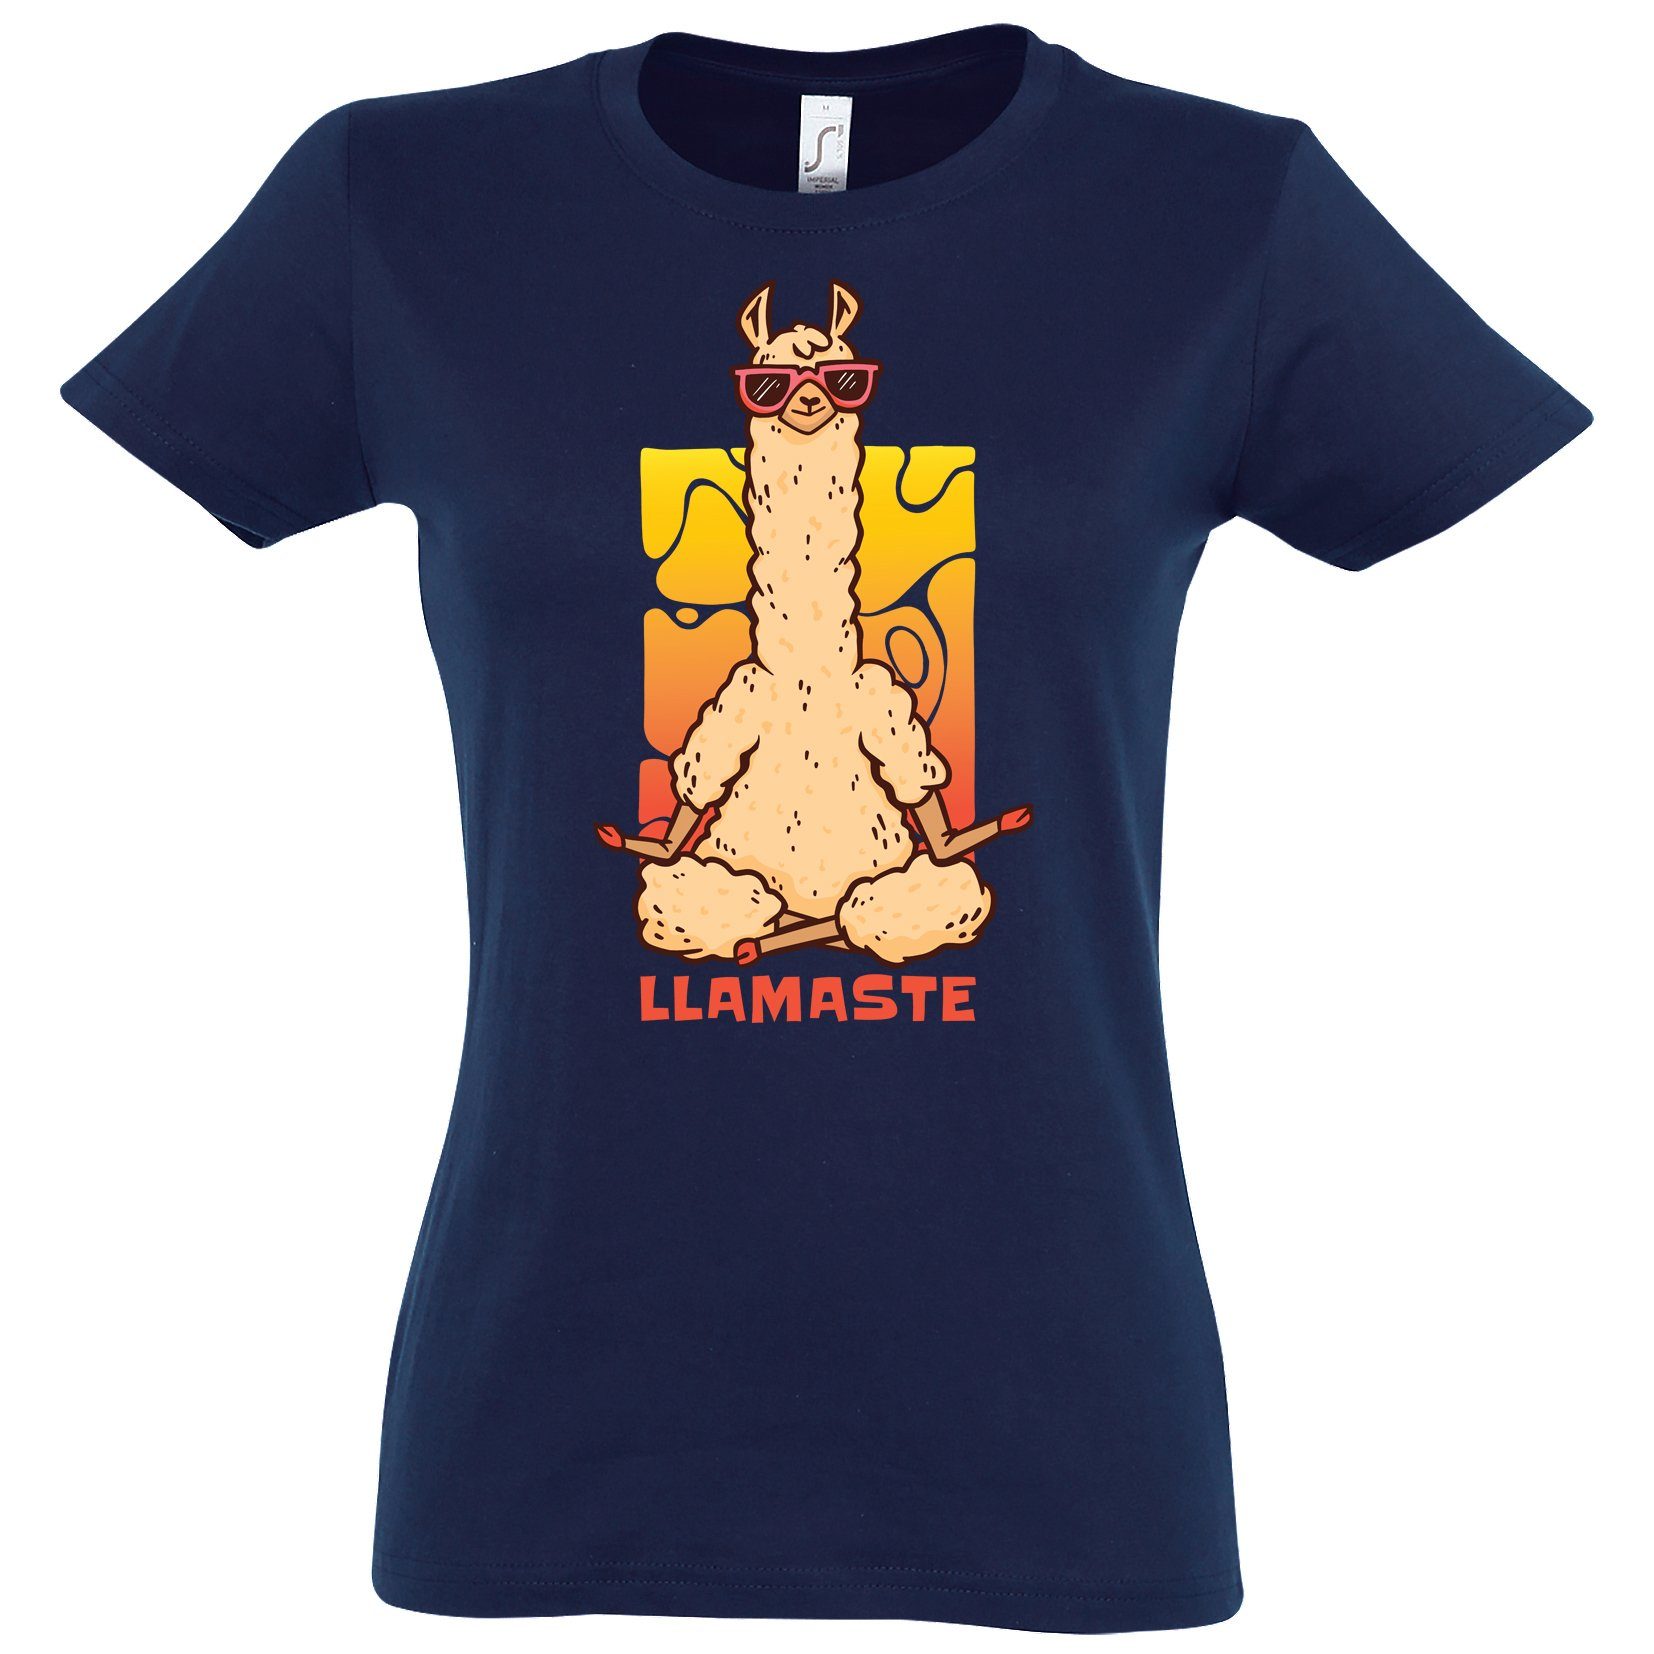 Youth Designz T-Shirt Lamaste Meditate Mit Print modischem Damen Shirt Navy